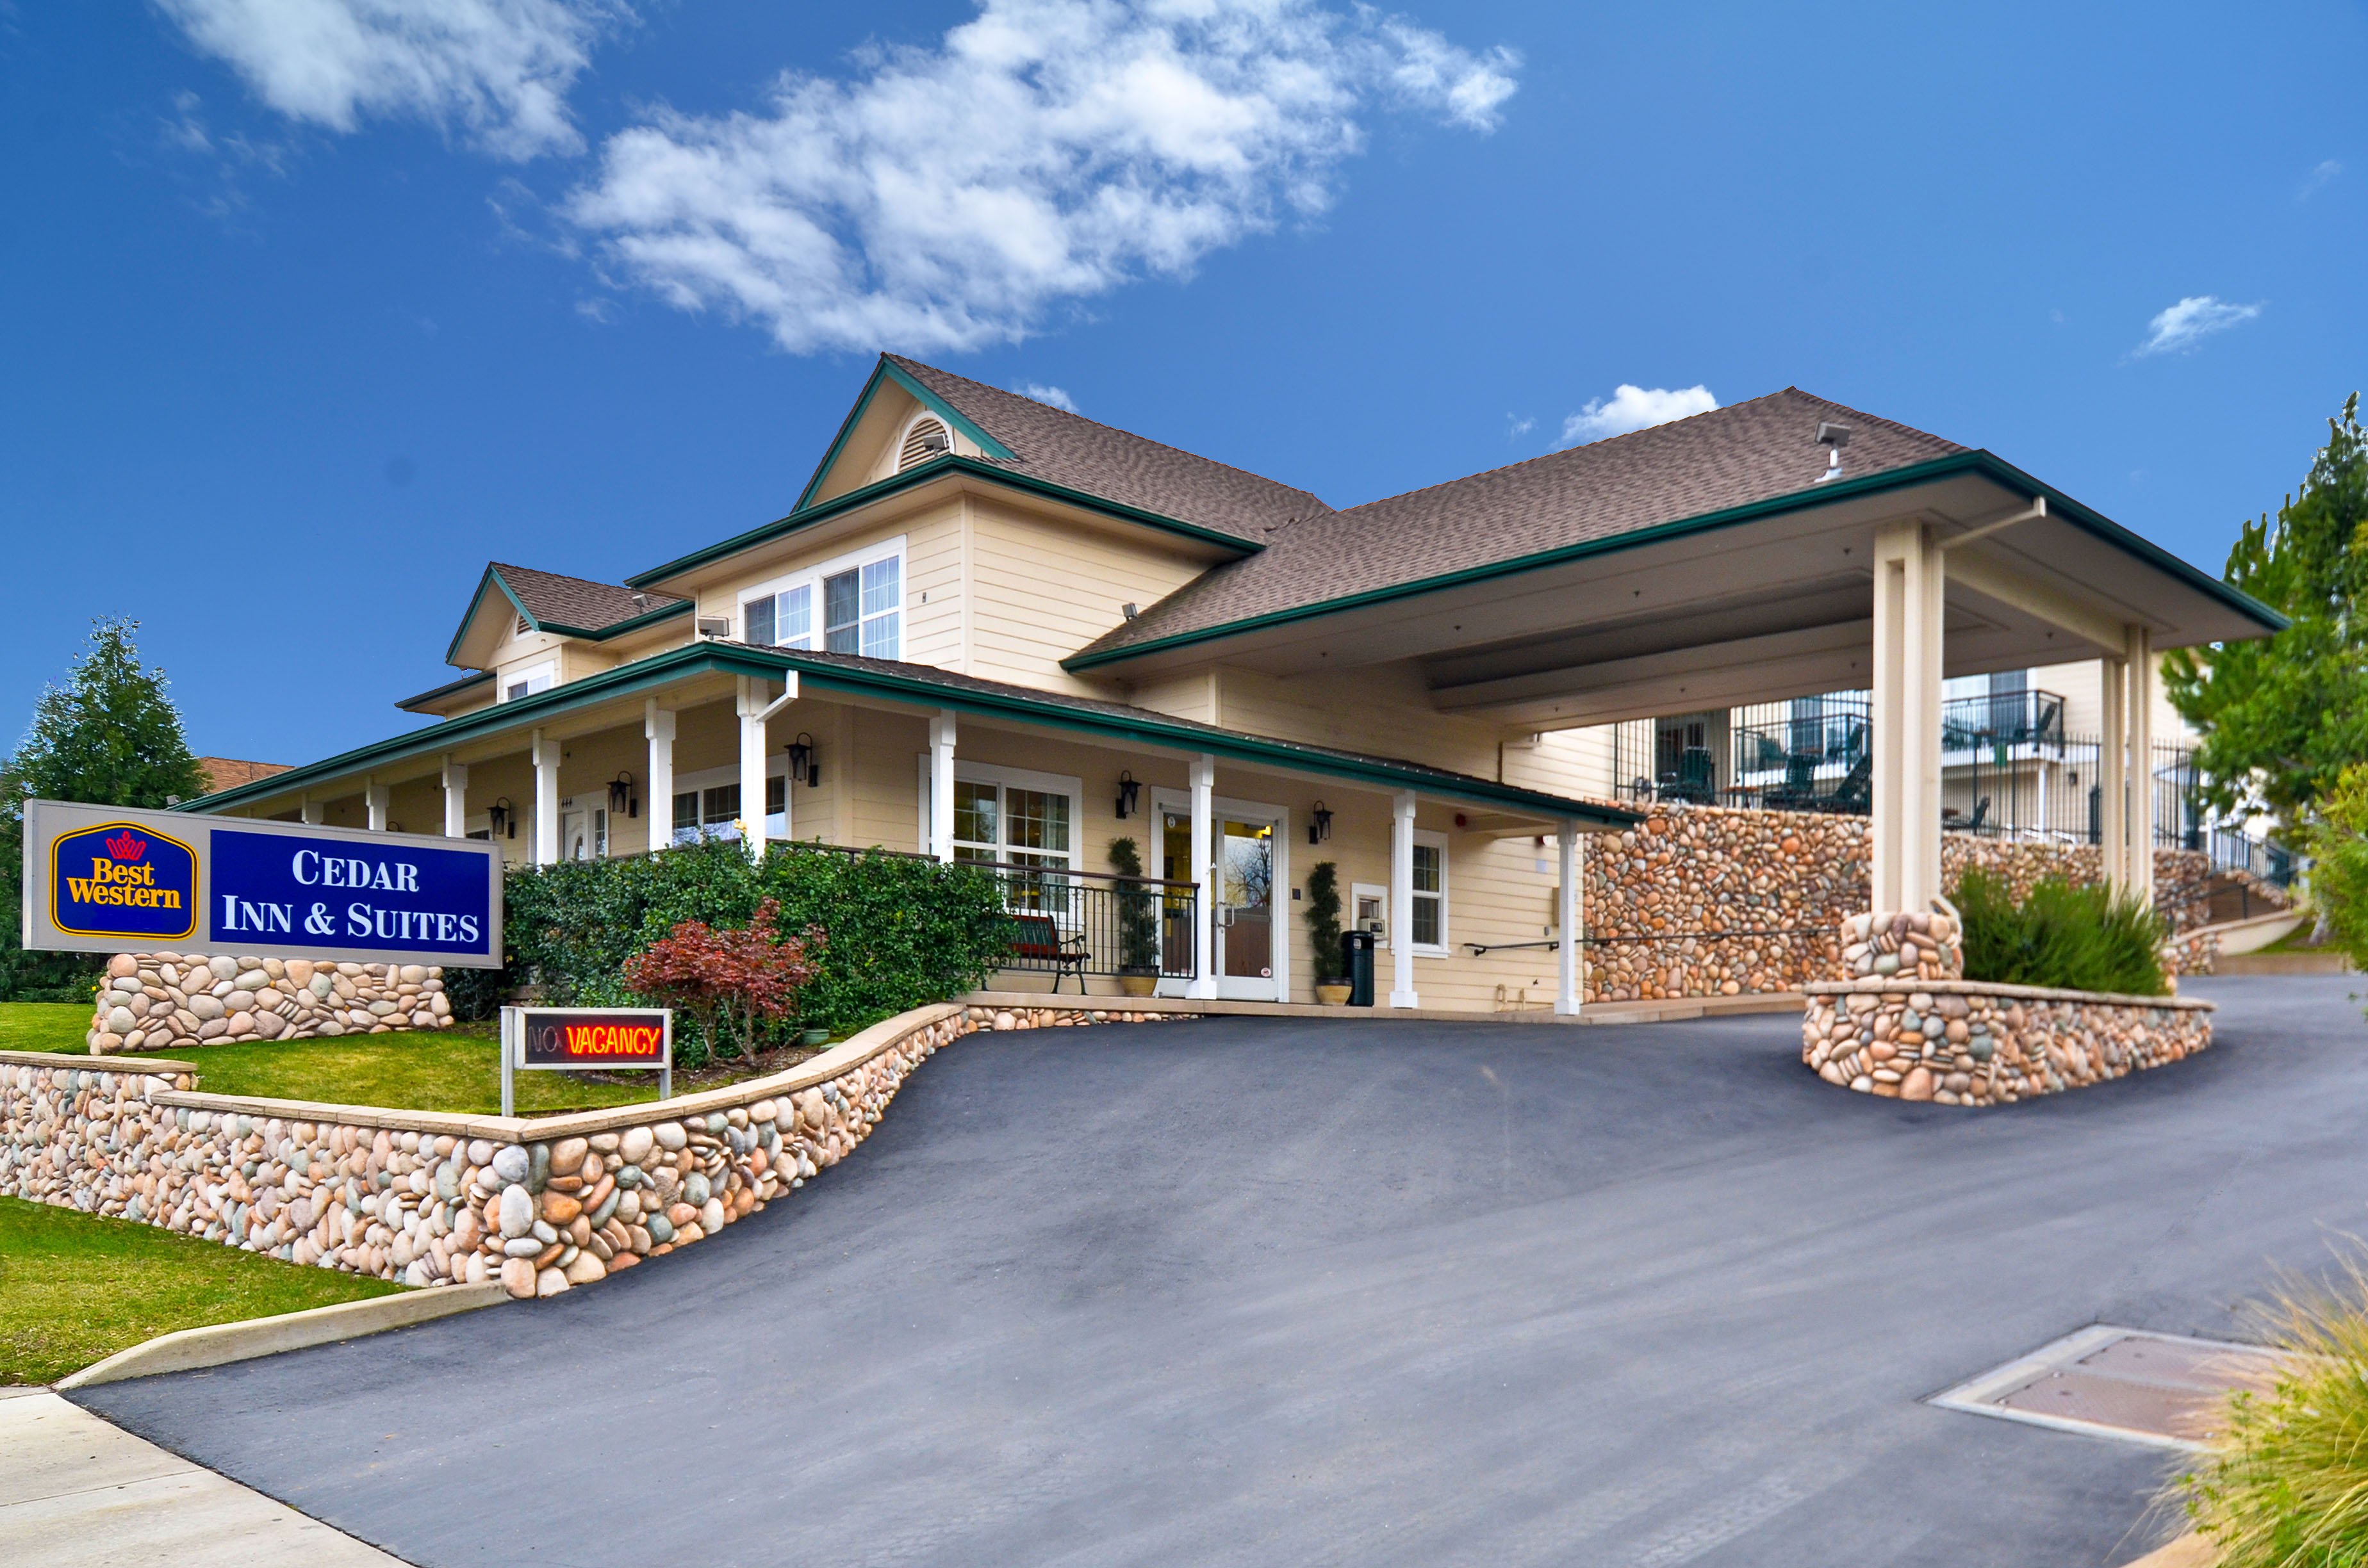 Best Western Cedar Inn & Suites image